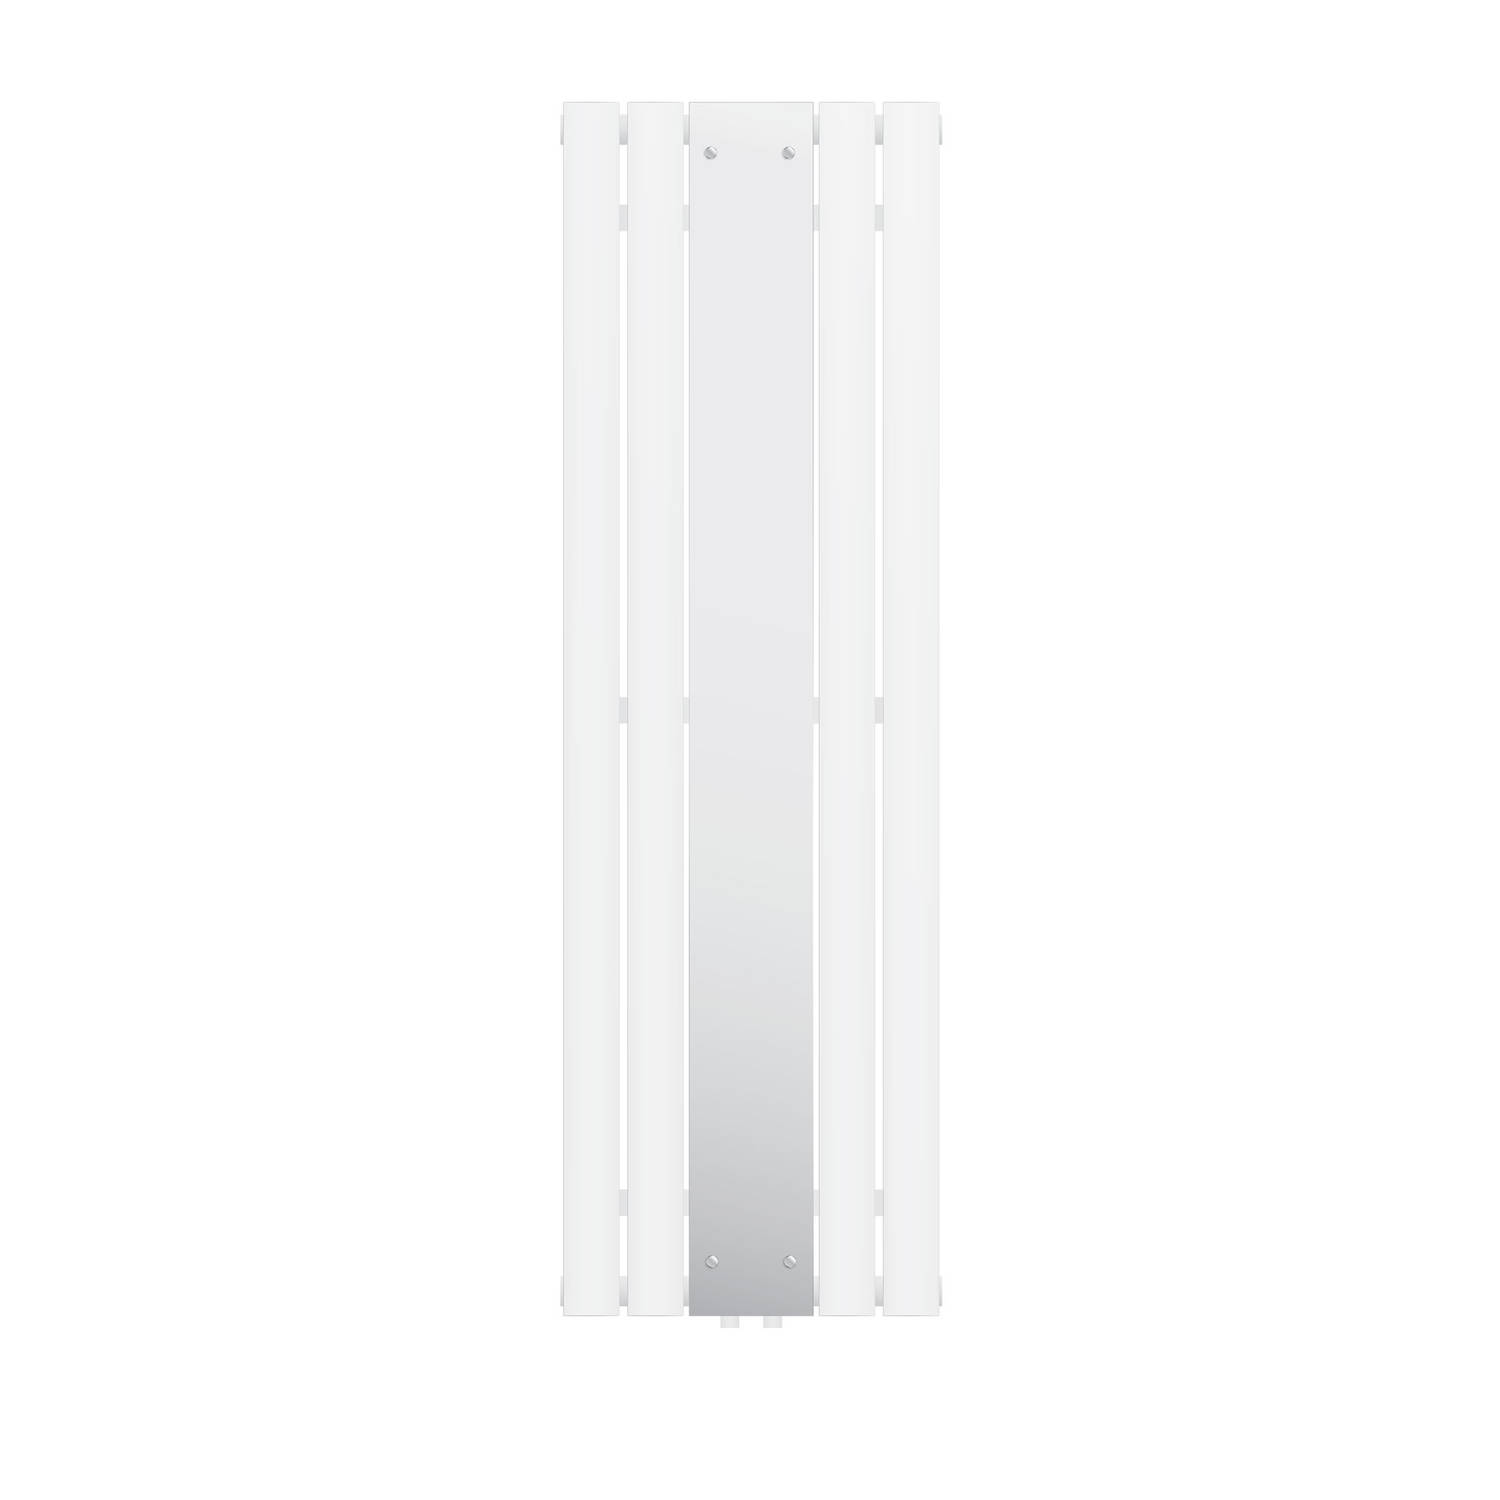 LuxeBath badkamer radiator vlak 1600 x 450 mm wit met spiegel, design paneelradiator middenaansluiting verwarming, vlakke radiator verticaal enkellaags, spiegelradiator glas radiat